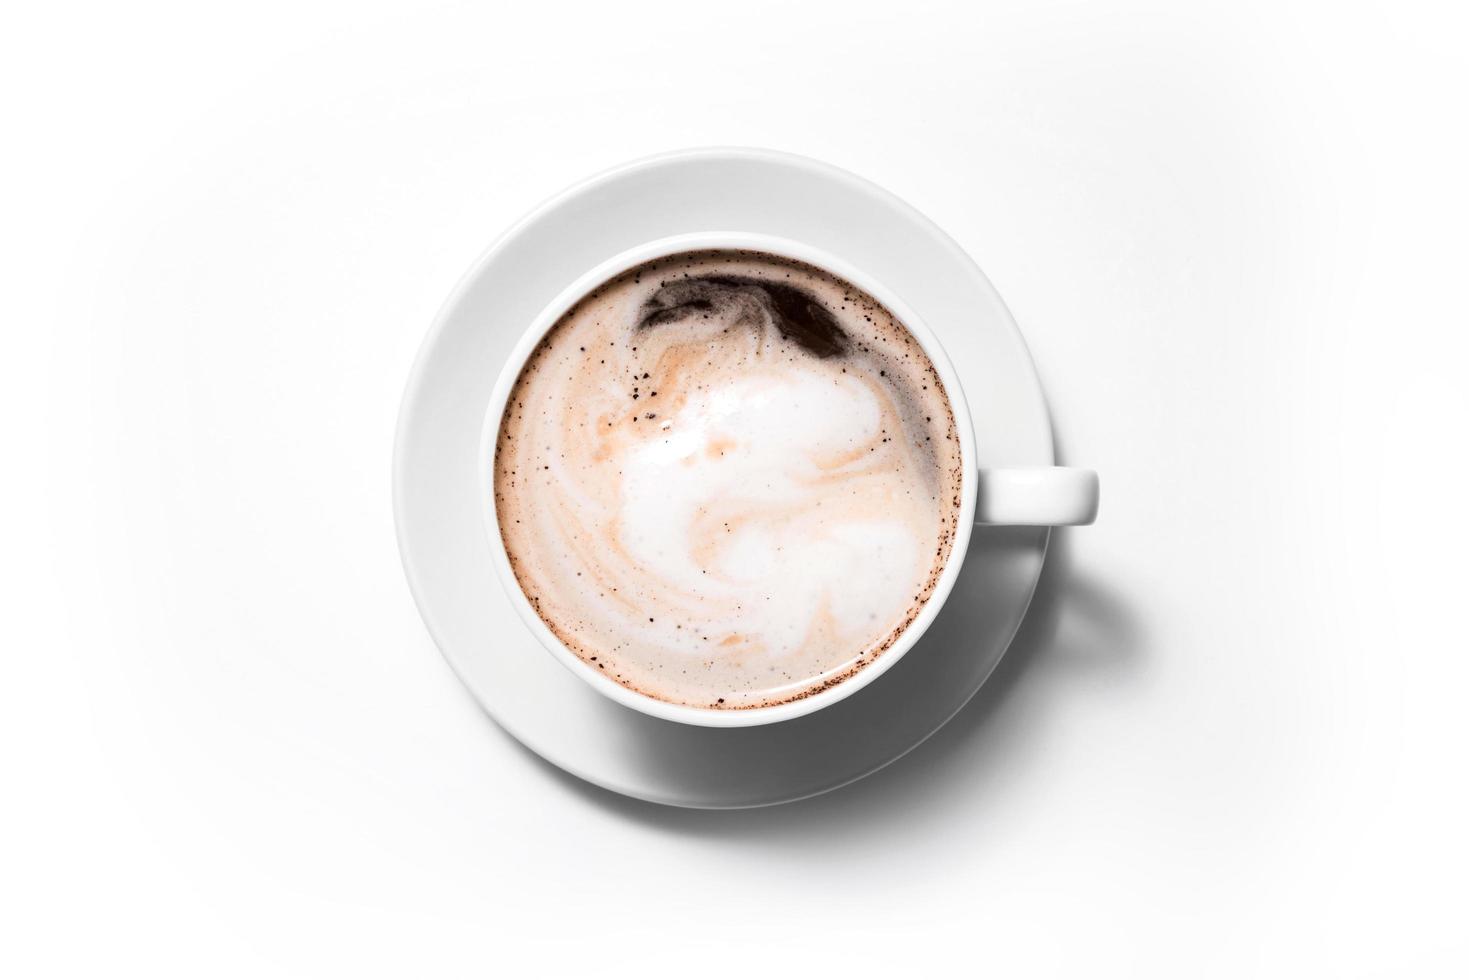 kopje koffie cappuccino op een witte achtergrond, full frame foto